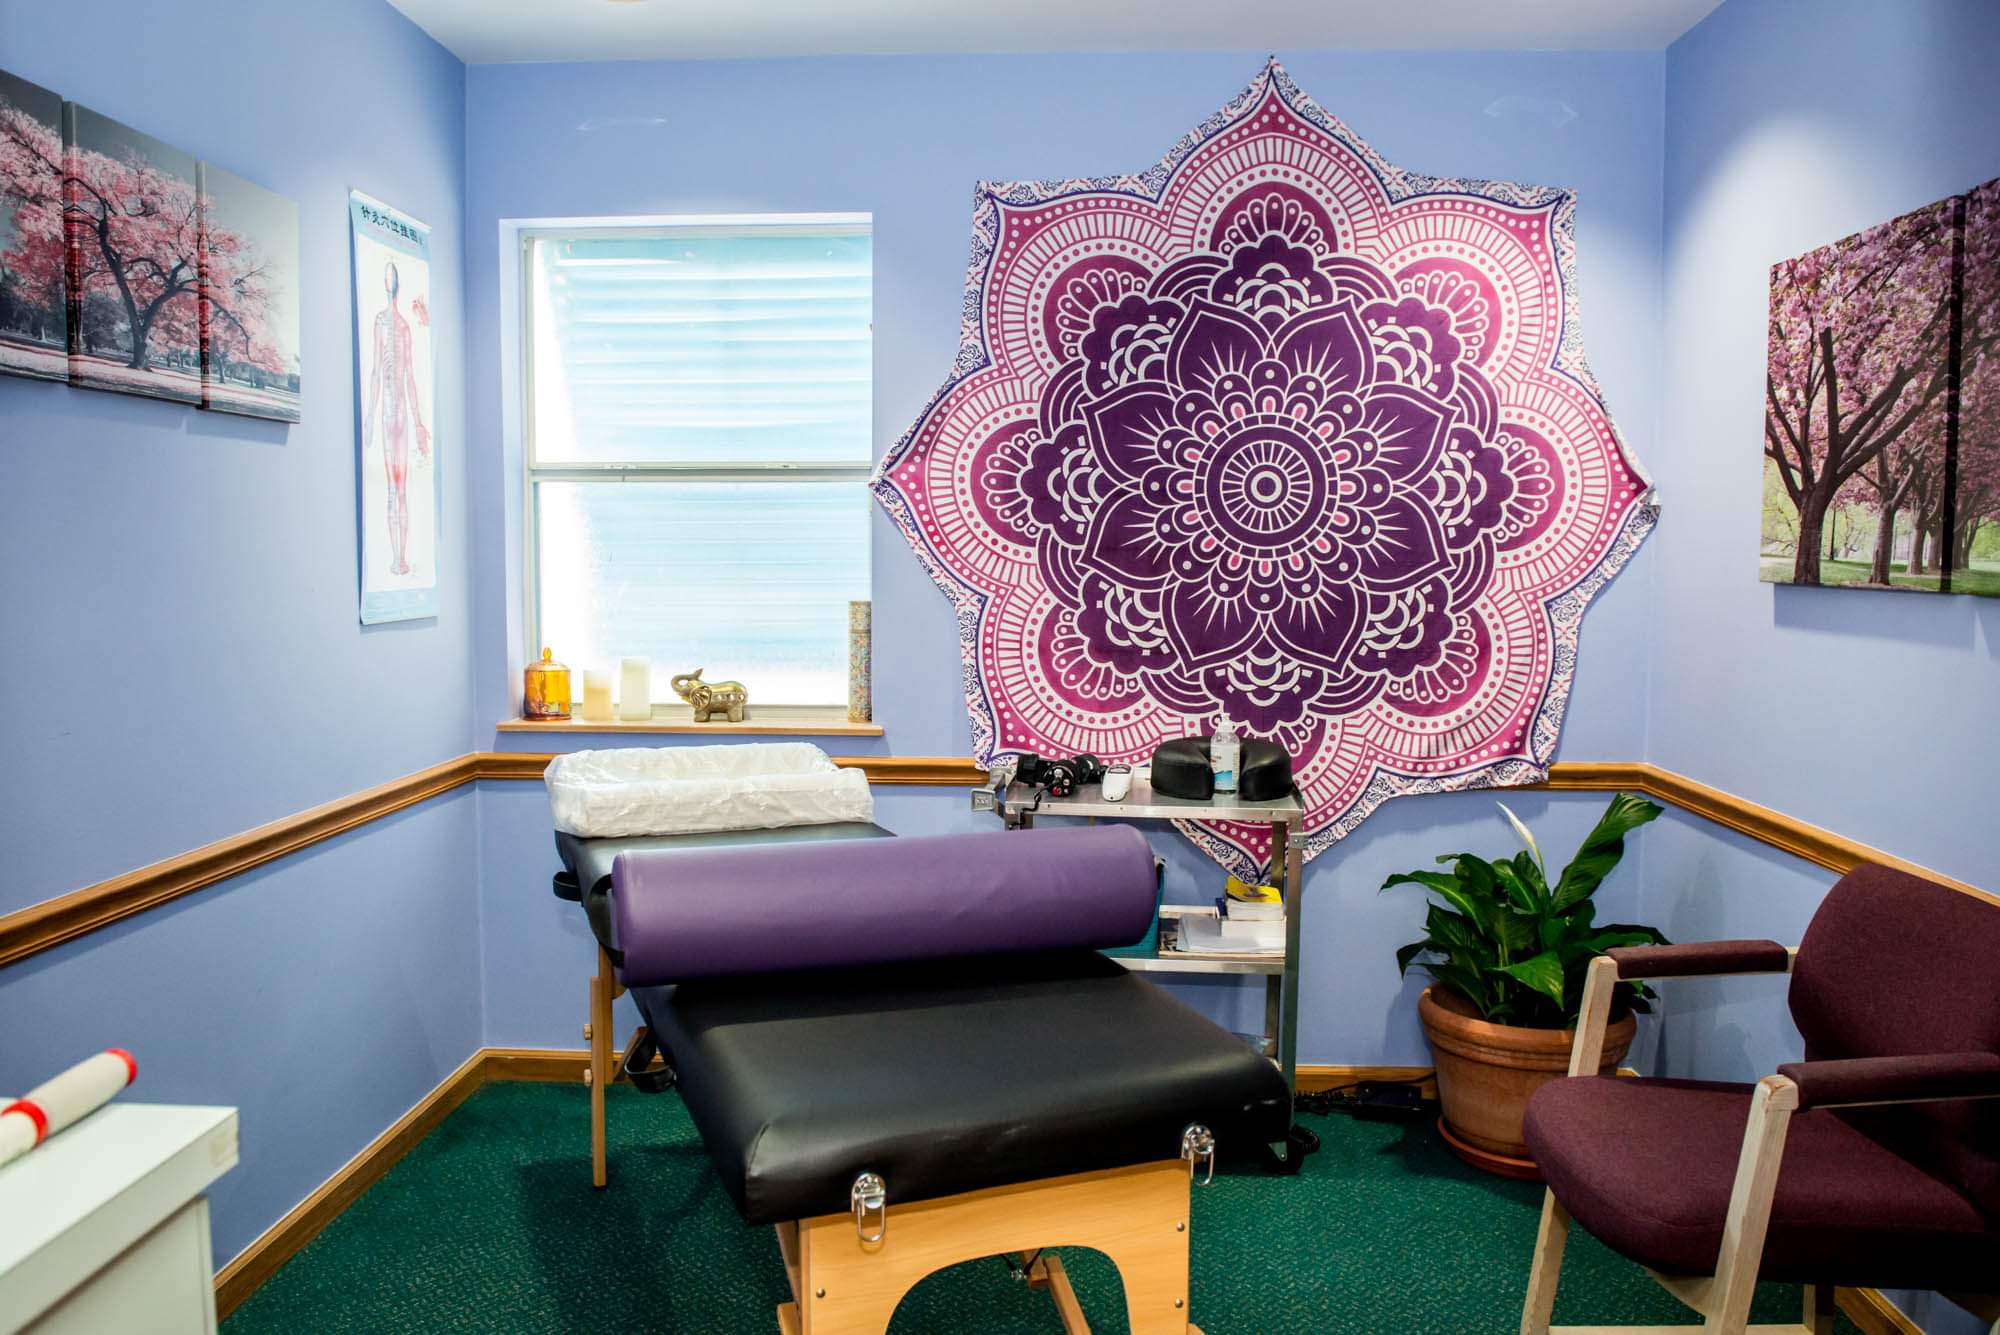 Chiropractor Rooms